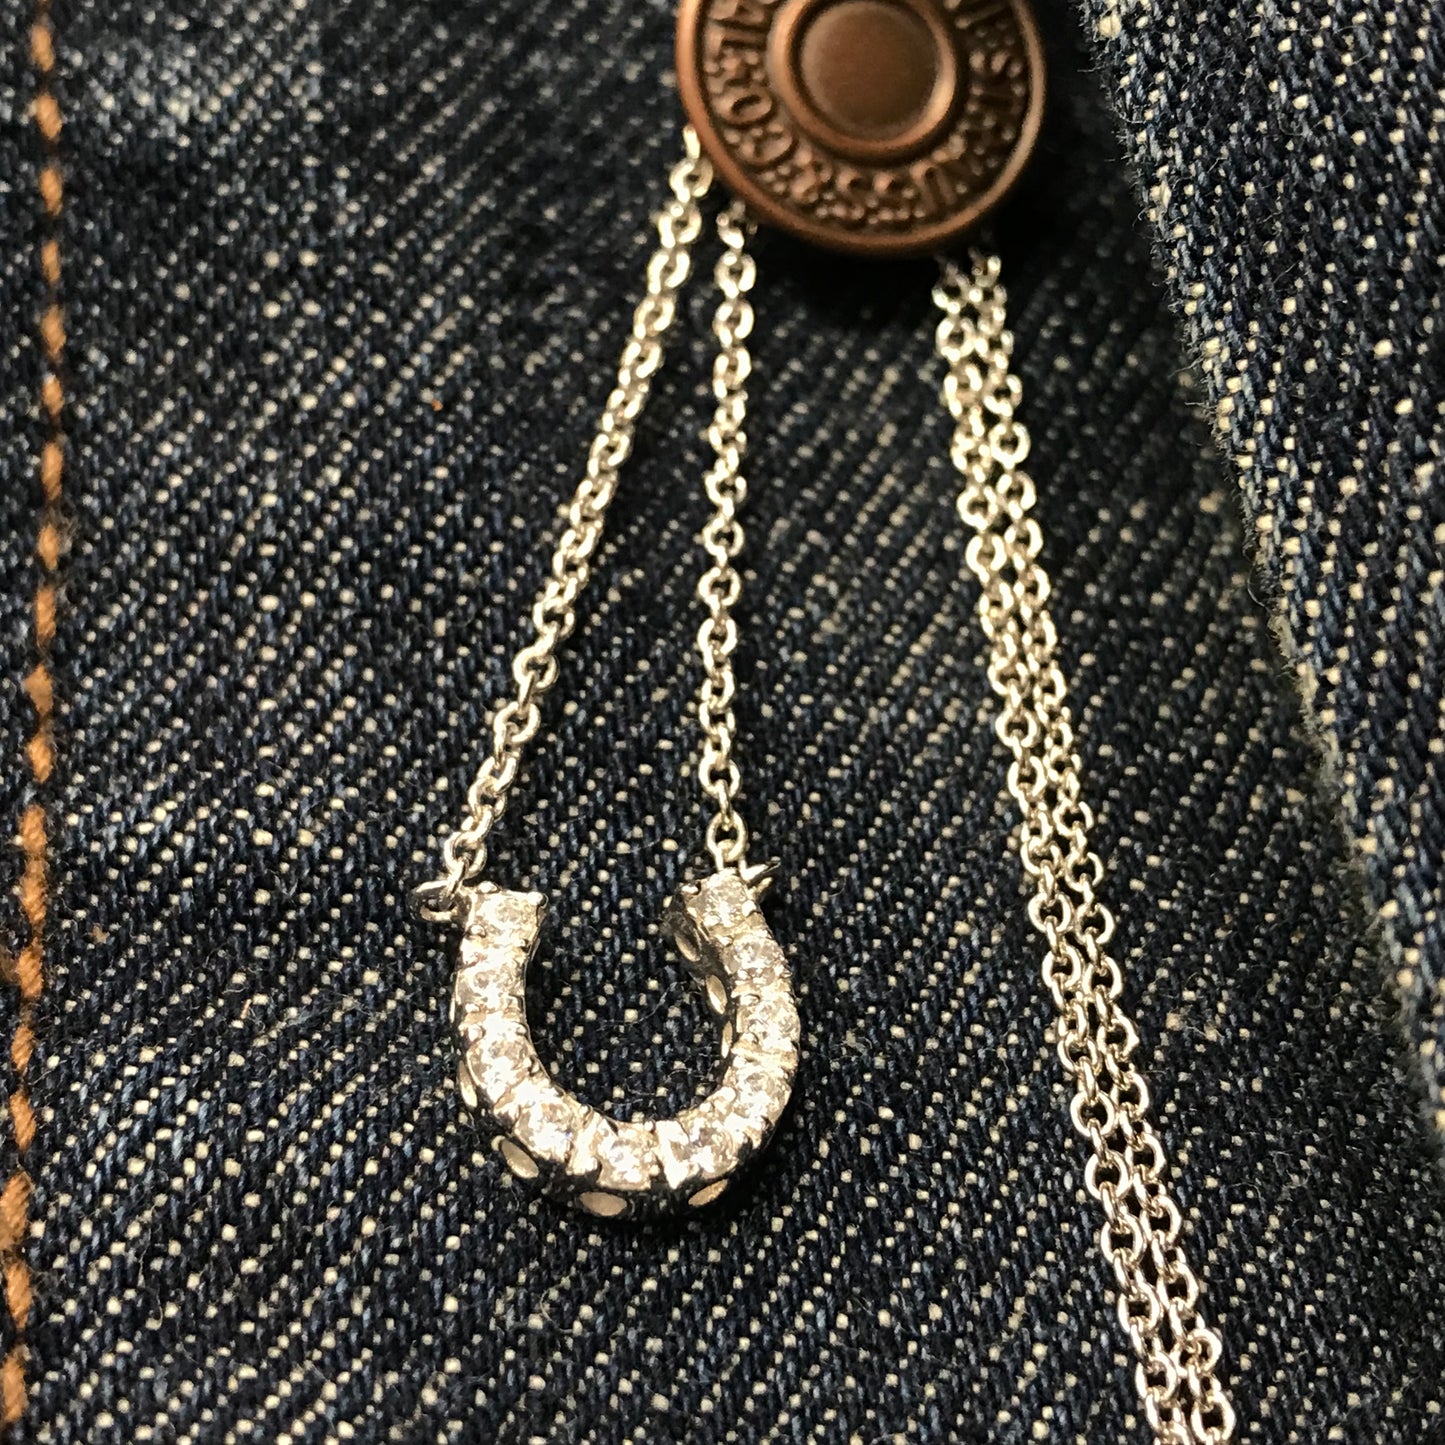 Horseshoe Necklace - Small